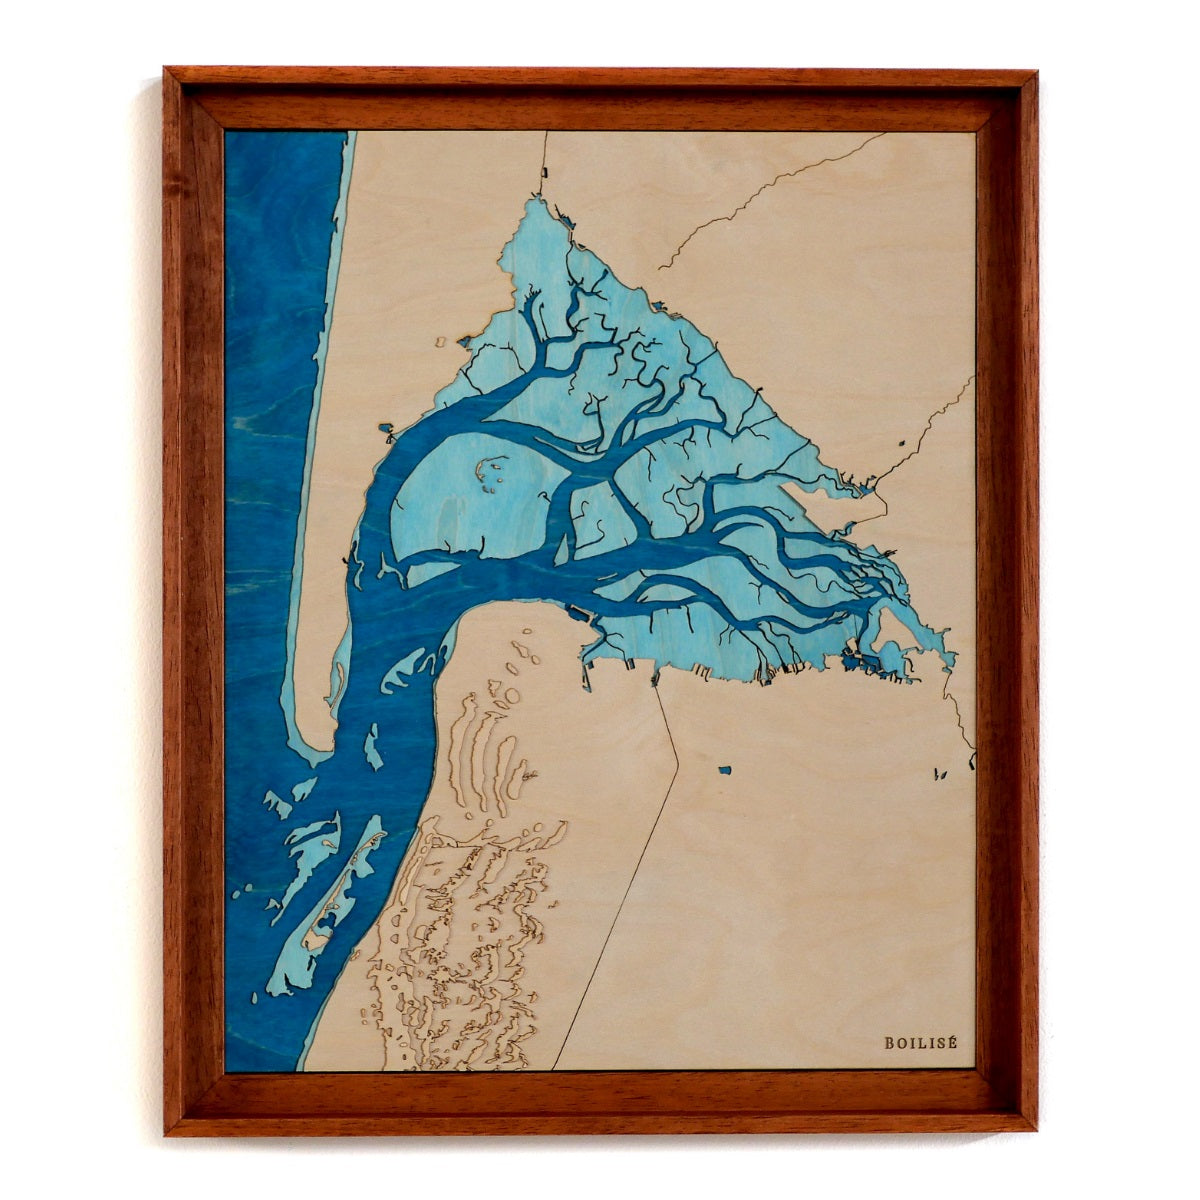 Tableau du bassin d'Arcachon, caisse américaine brune et océan bleu marine